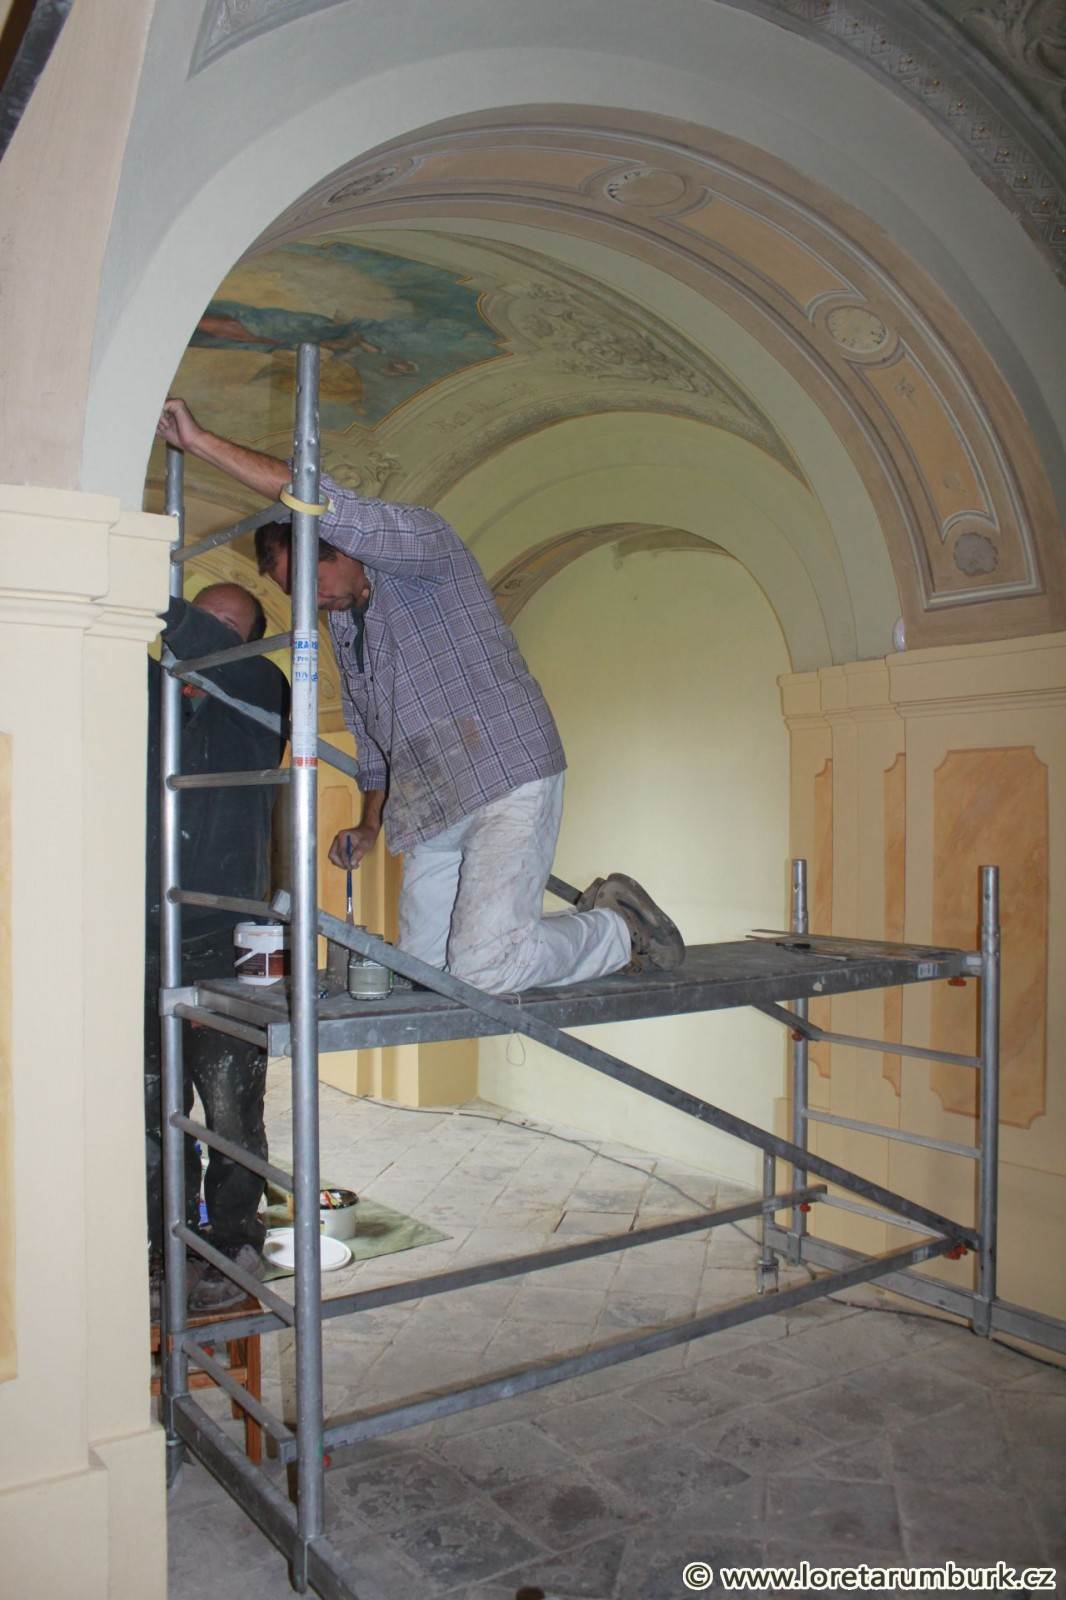 3, Loreta Rumburk, dekoratiovní výmalba, při restaurování, foto Klára Mágrová, 6 9 2012